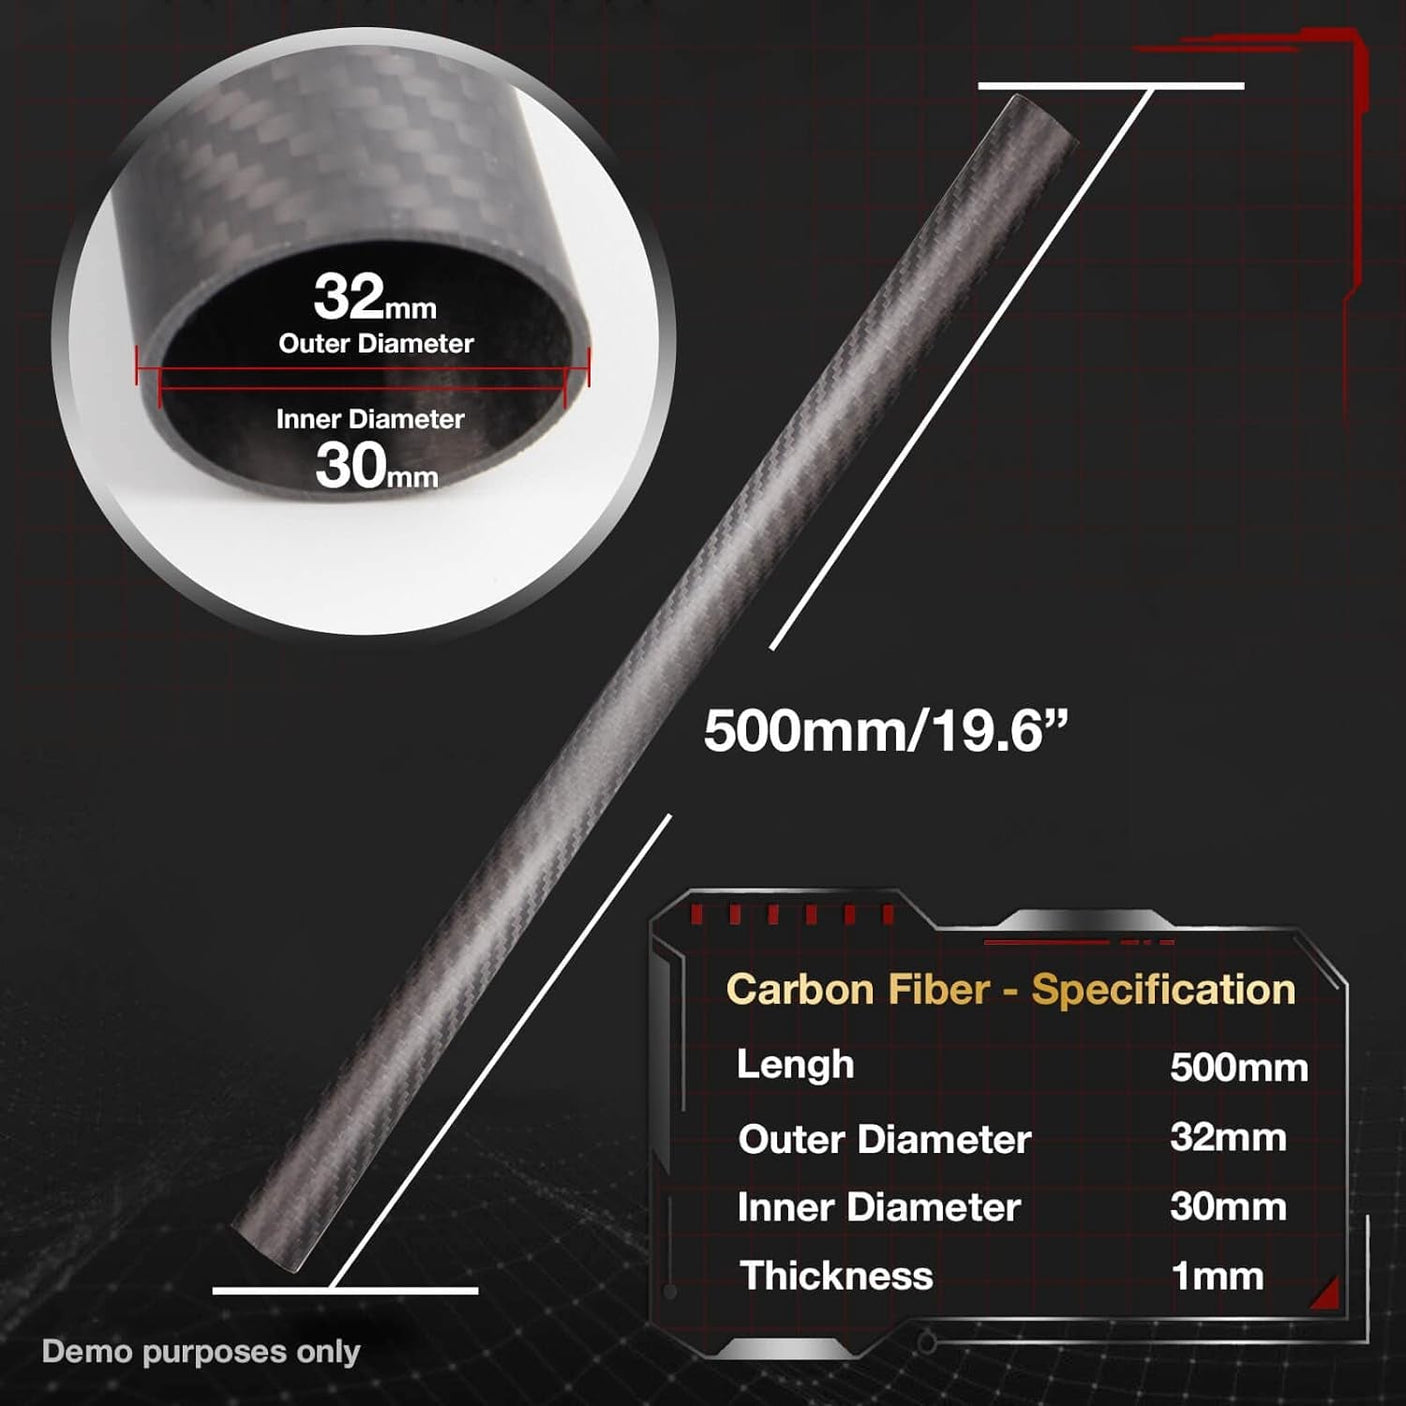 50mm O.D. 46mm I.D. 50x46x500mm 50mm 3K Roll Wrapped 100% Pure Round Carbon Tubes (2 PCS)